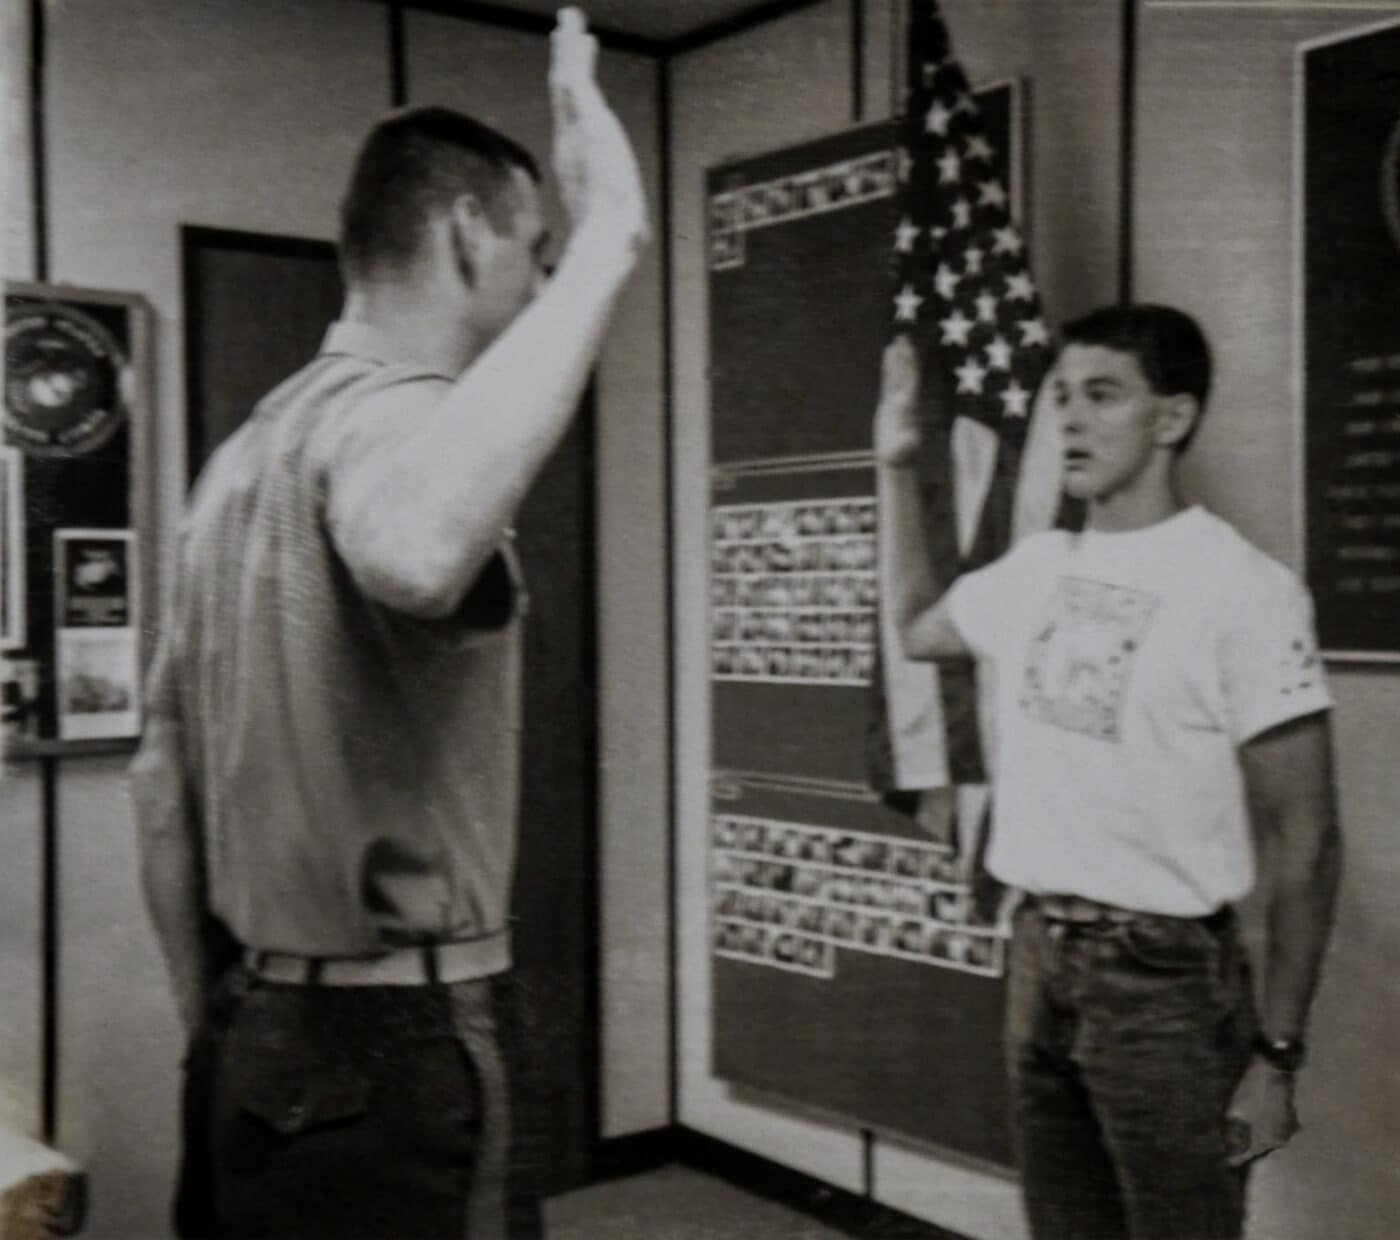 US Marine being sworn in